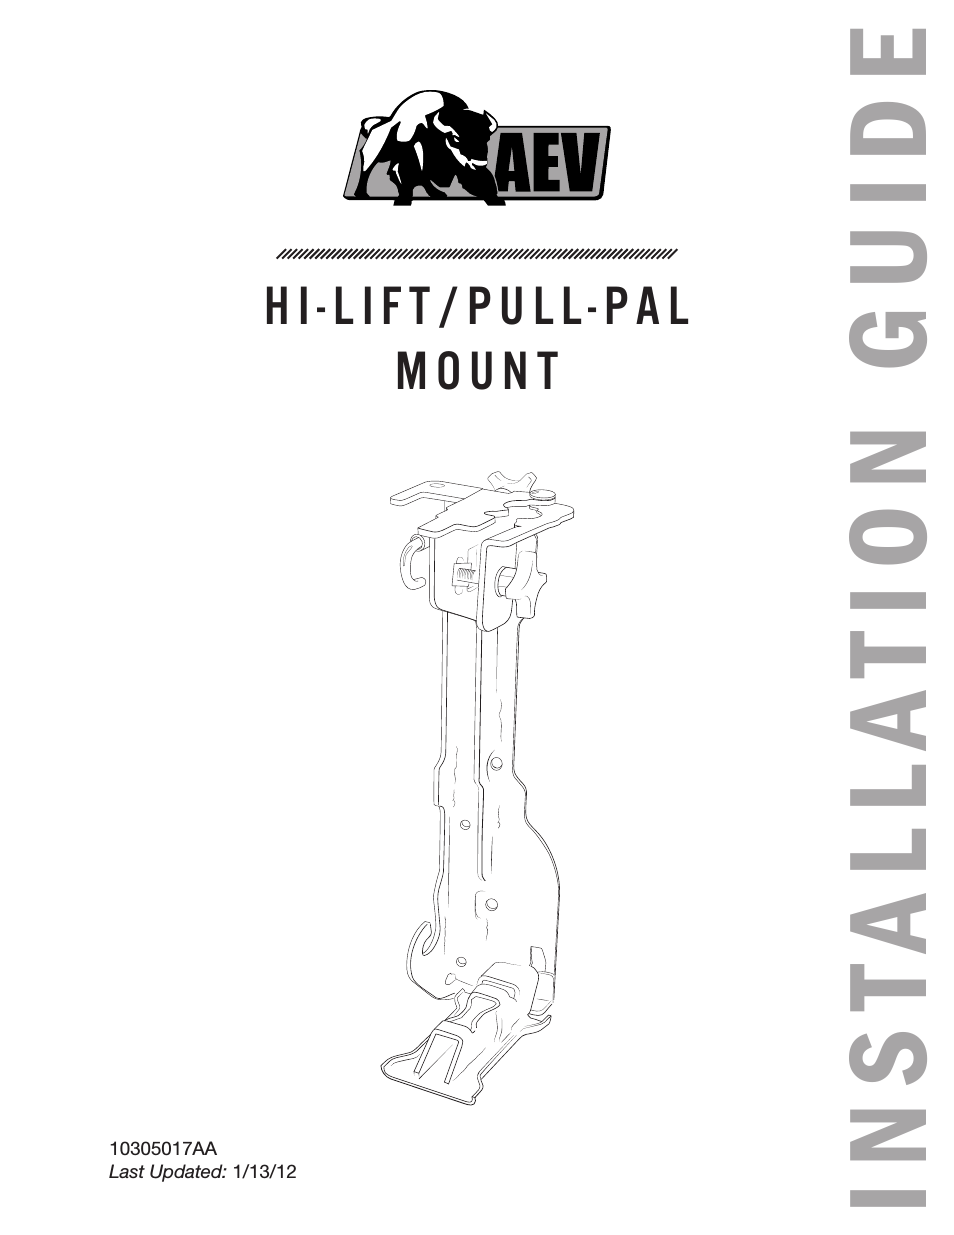 JK Hi-Lift/Pull-Pal Mount